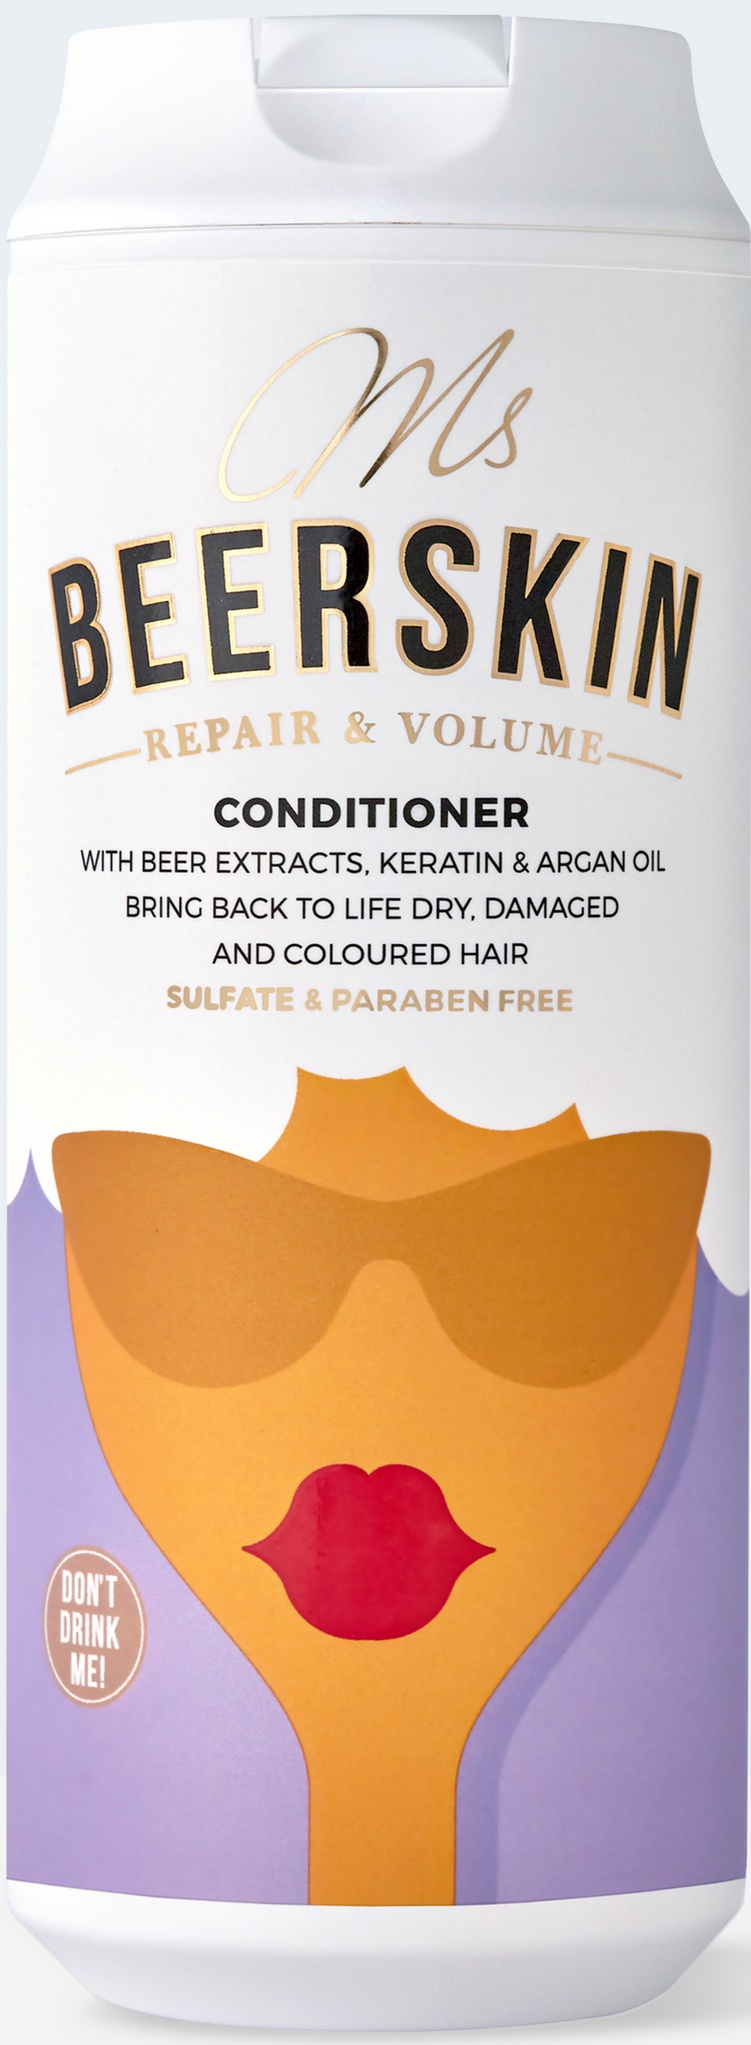 Beerskin Cosmetics Ms. Beerskin Repair & Volume Conditioner